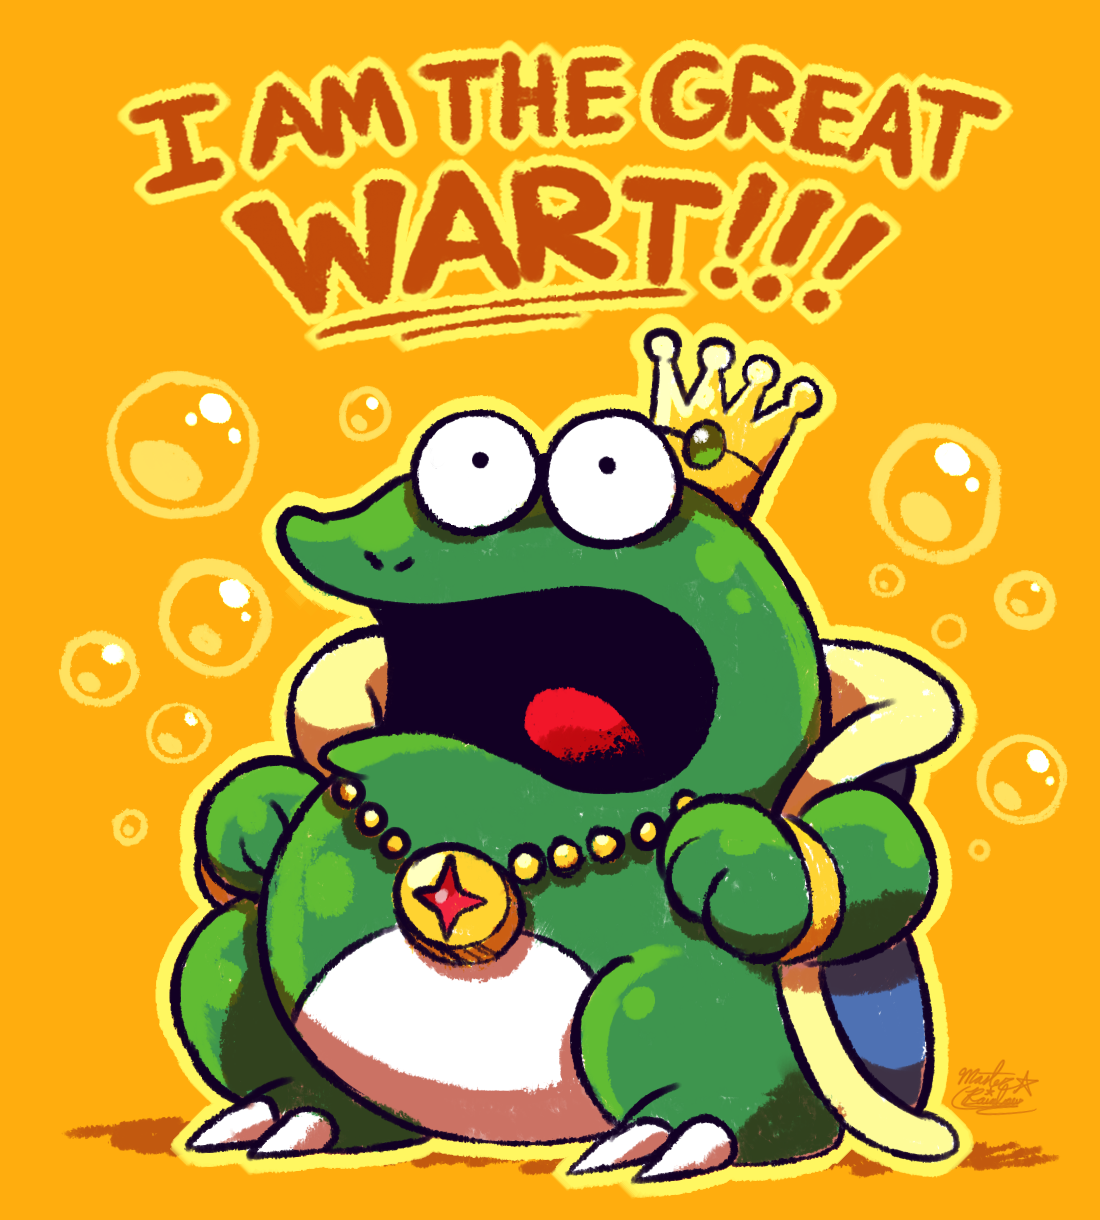 Wart (Super Mario Bros. 2), Nintendo